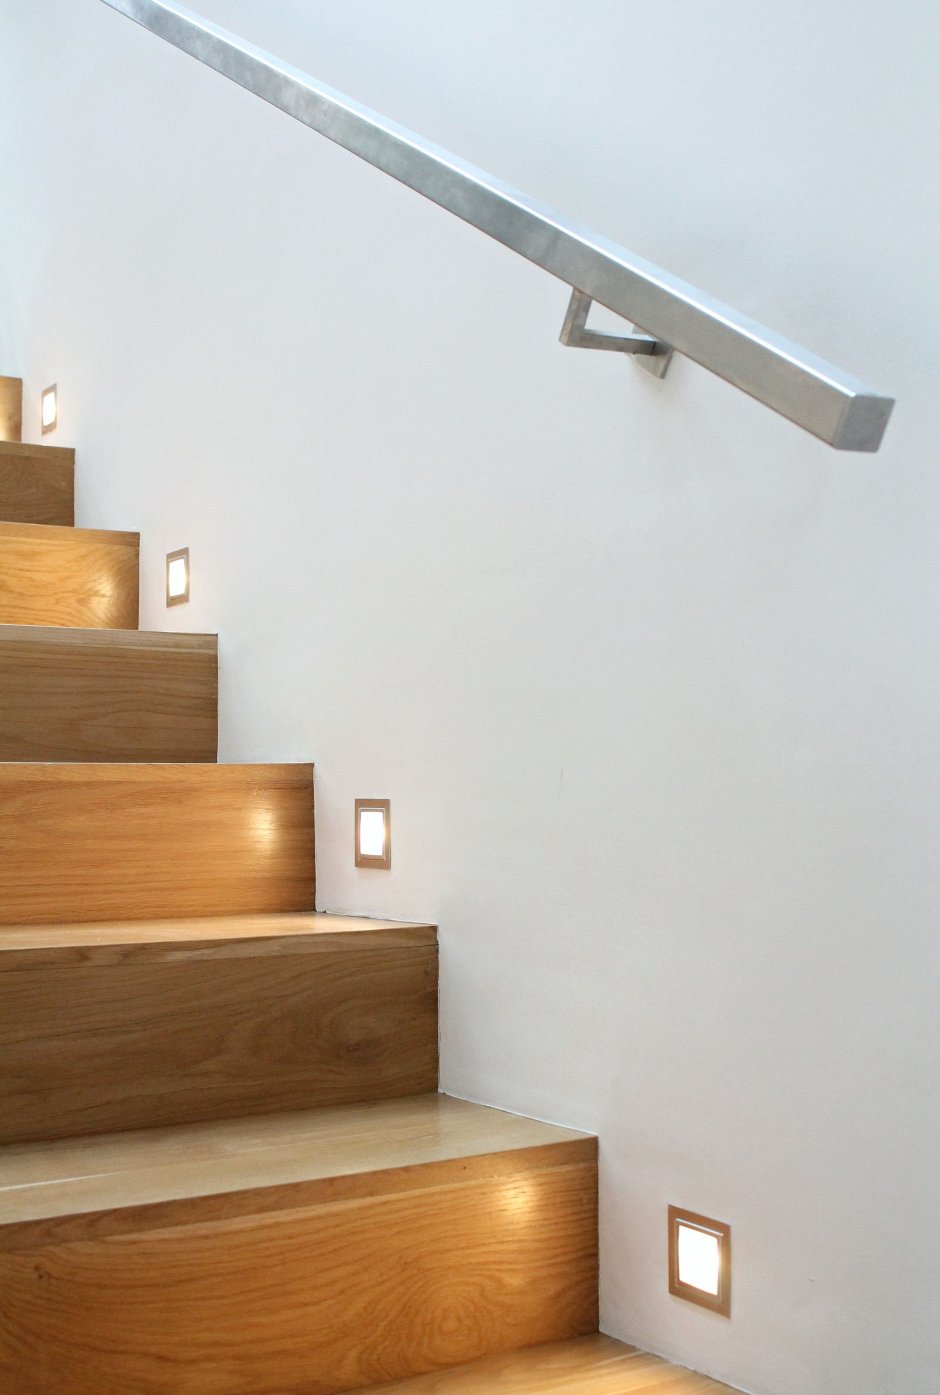 Светильники для ступеней лестницы в доме